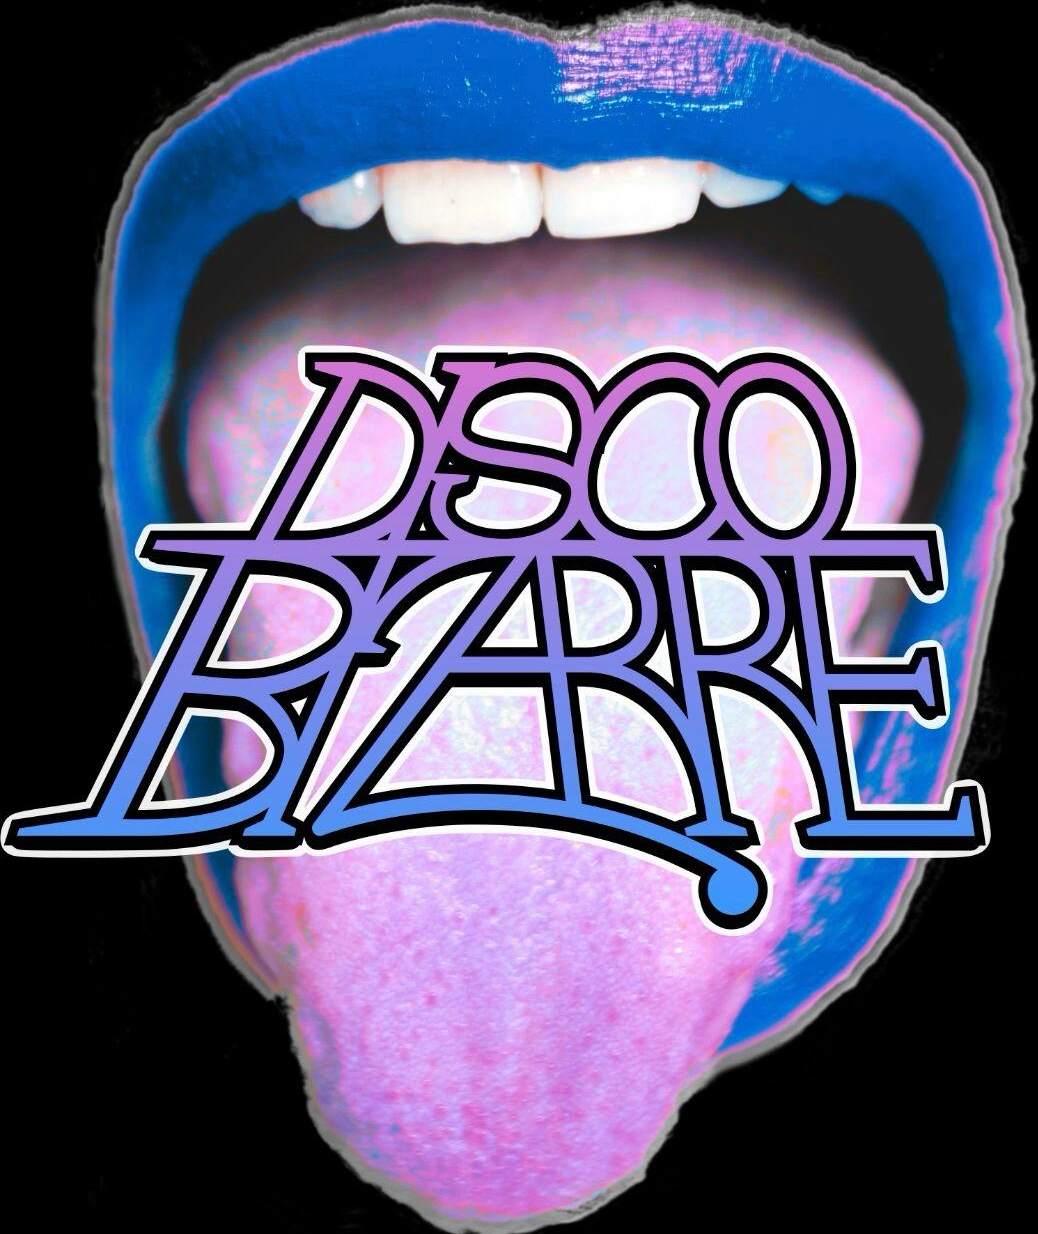 Disco Bizarre X Creature Palermo - フライヤー裏